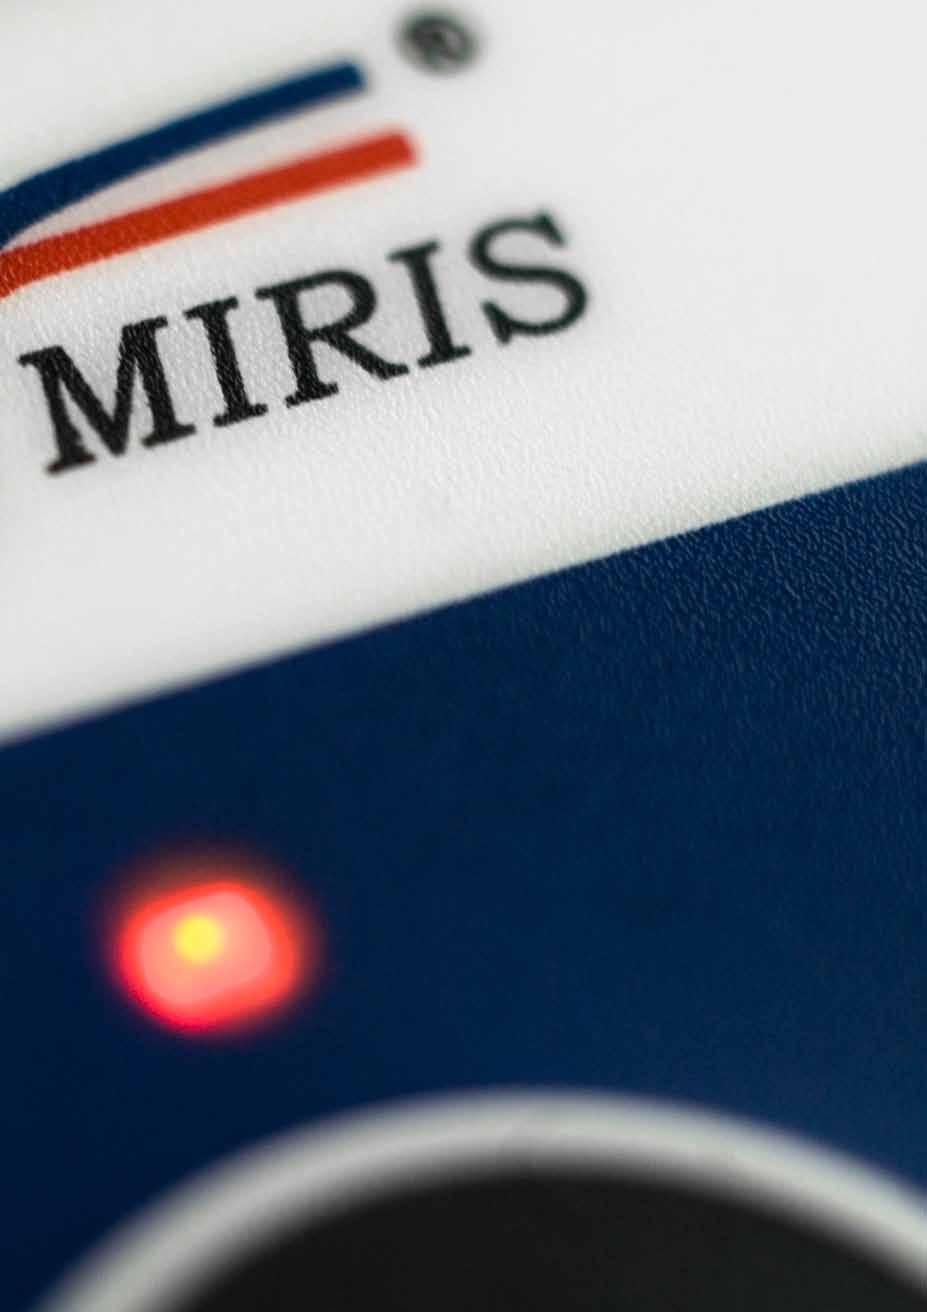 Miris utvecklar, tillverkar och säljer konkurrenskraftiga analysinstrument för analys av vätskor.